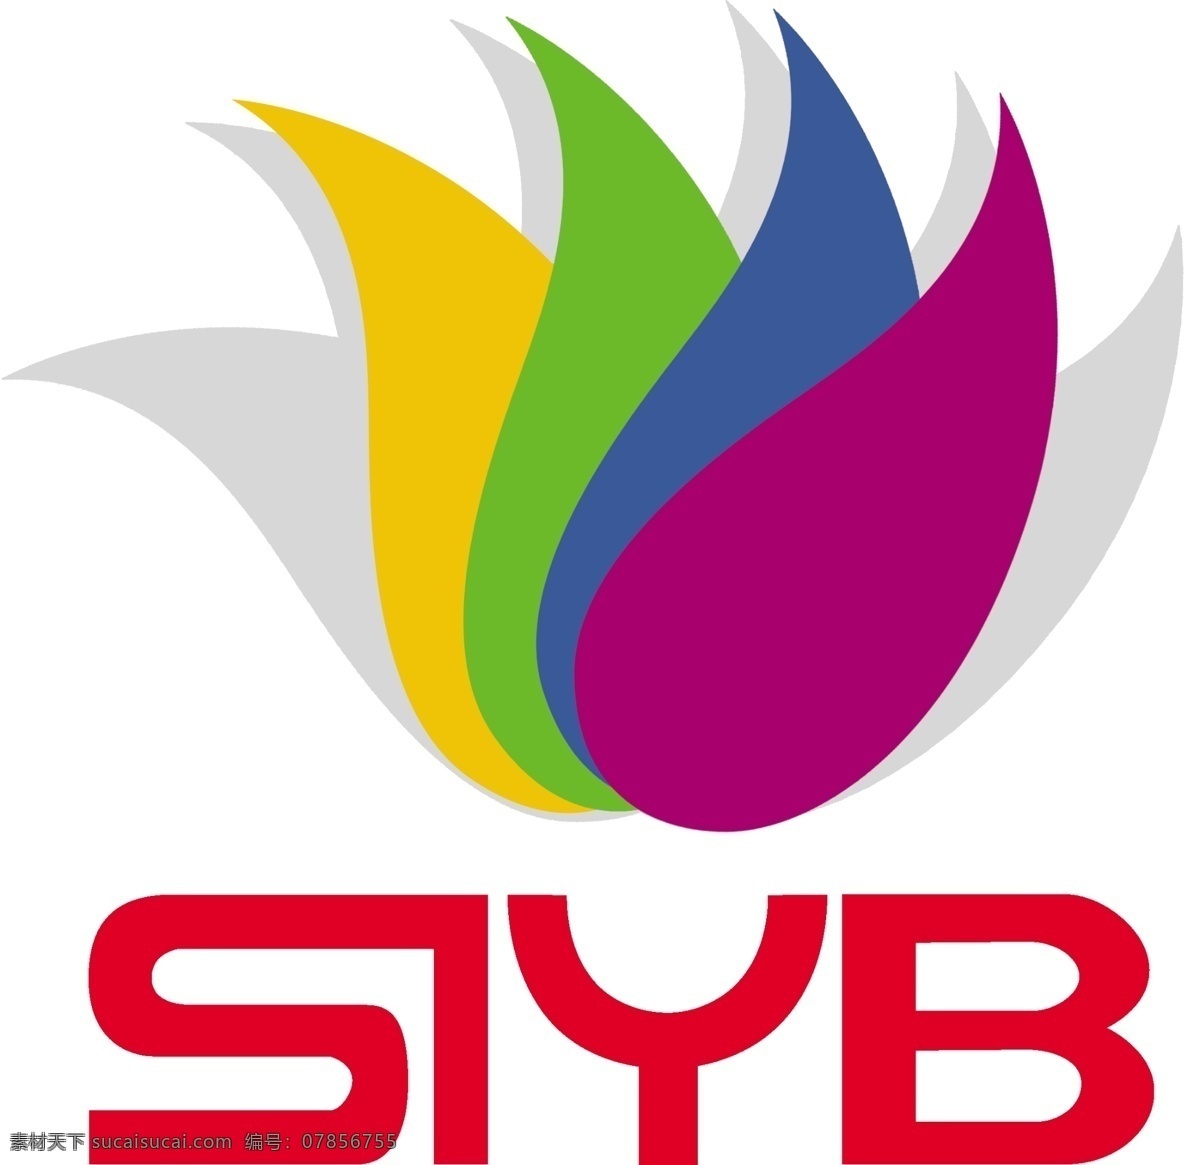 siyb 创业 培训 创业培训 siyb标志 米兰花 标志 广告设计模板 源文件 名片 宣传单 名片卡片